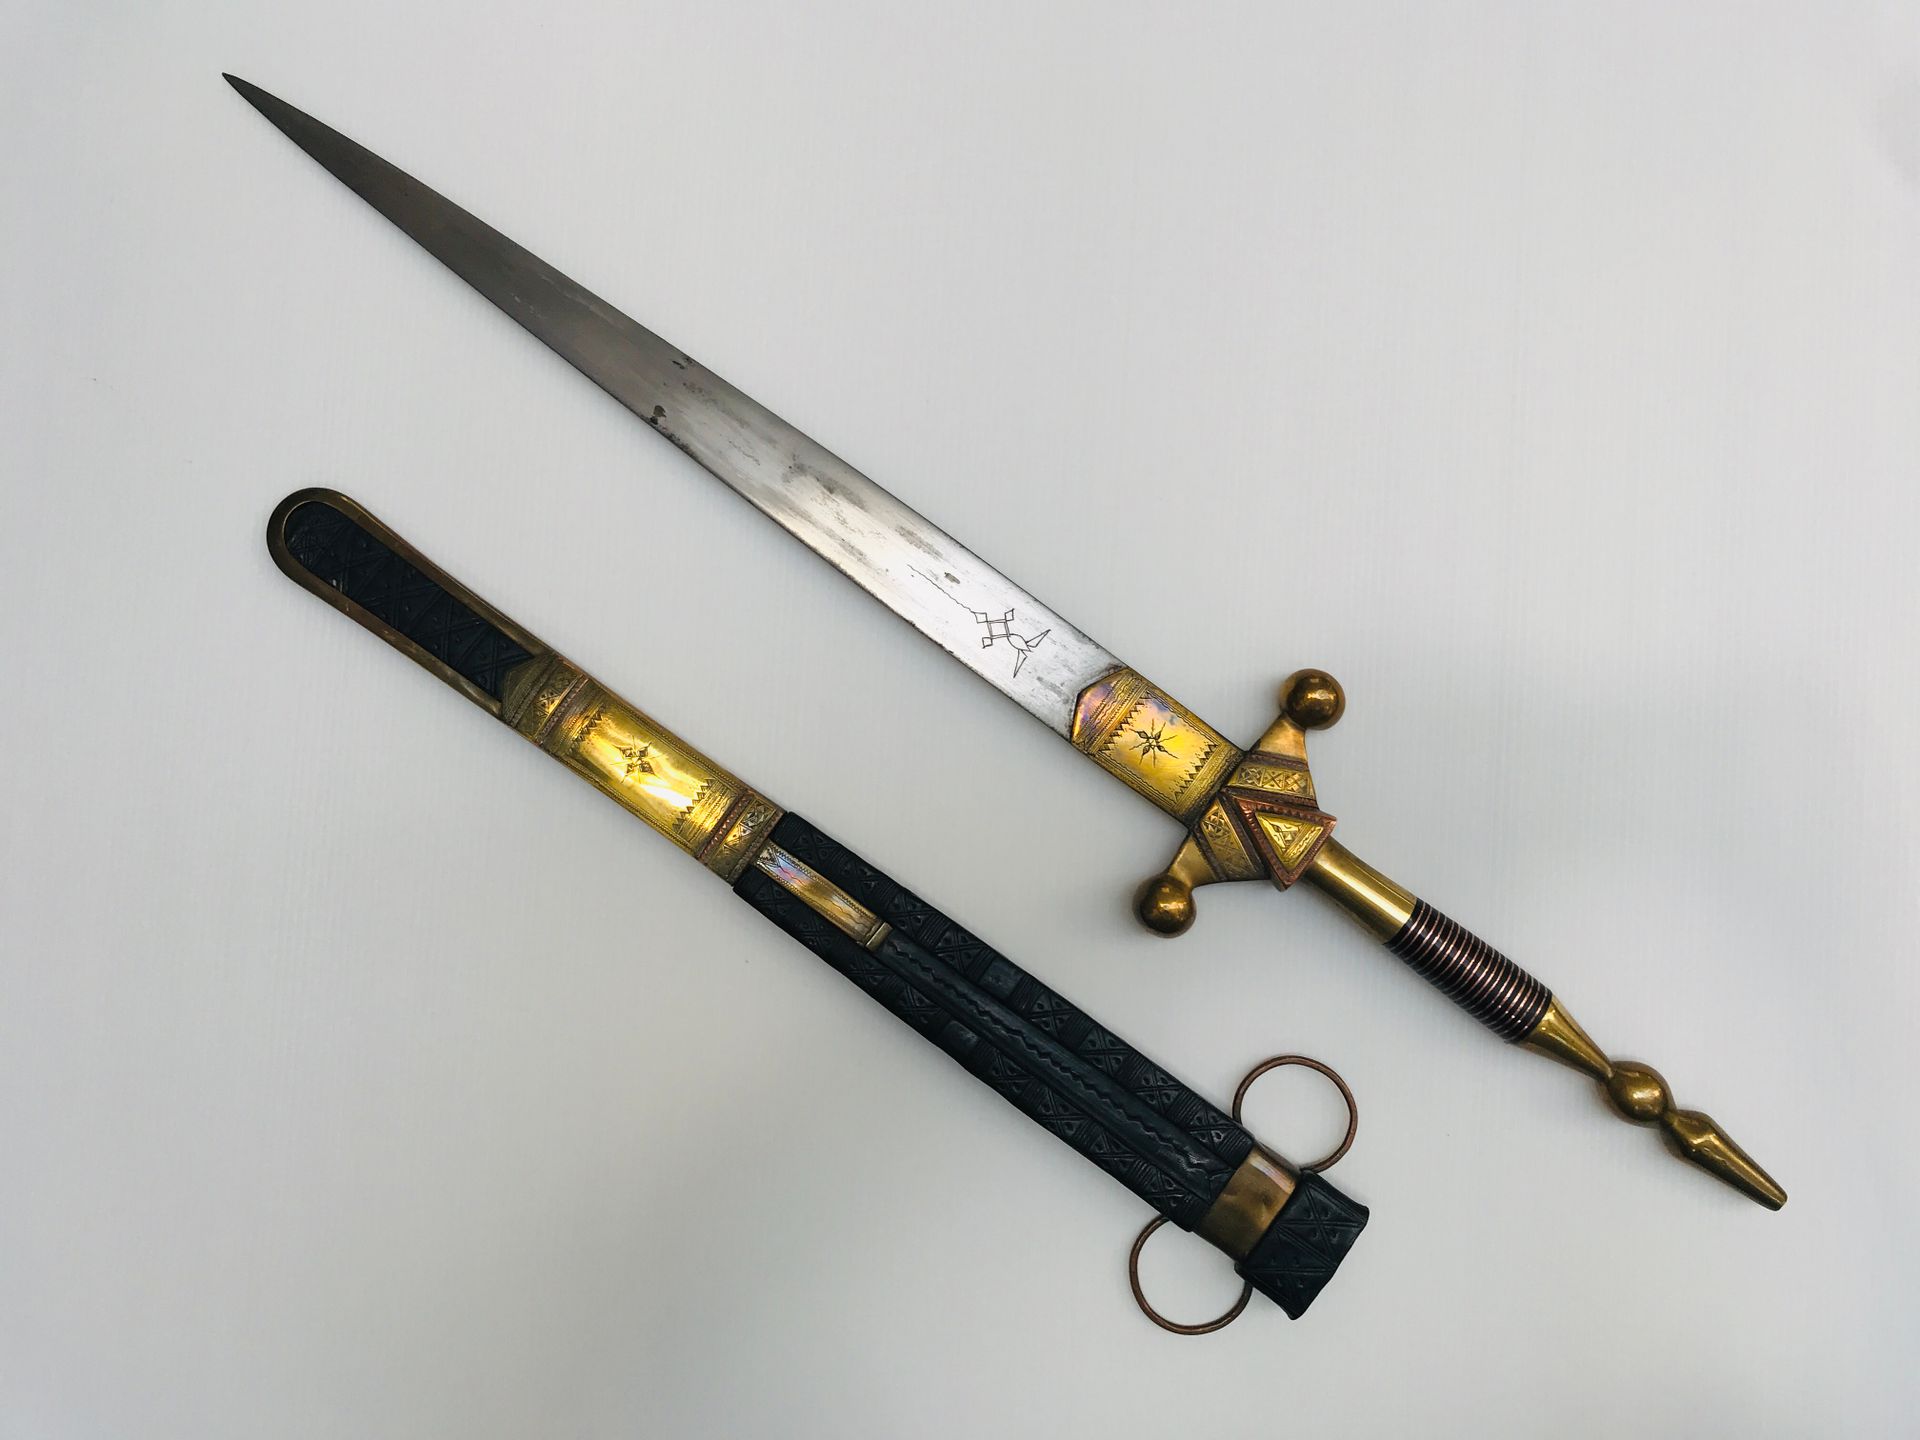 Épée touareg 黄铜和铜制雕刻，皮制刀鞘

L. 77 cm